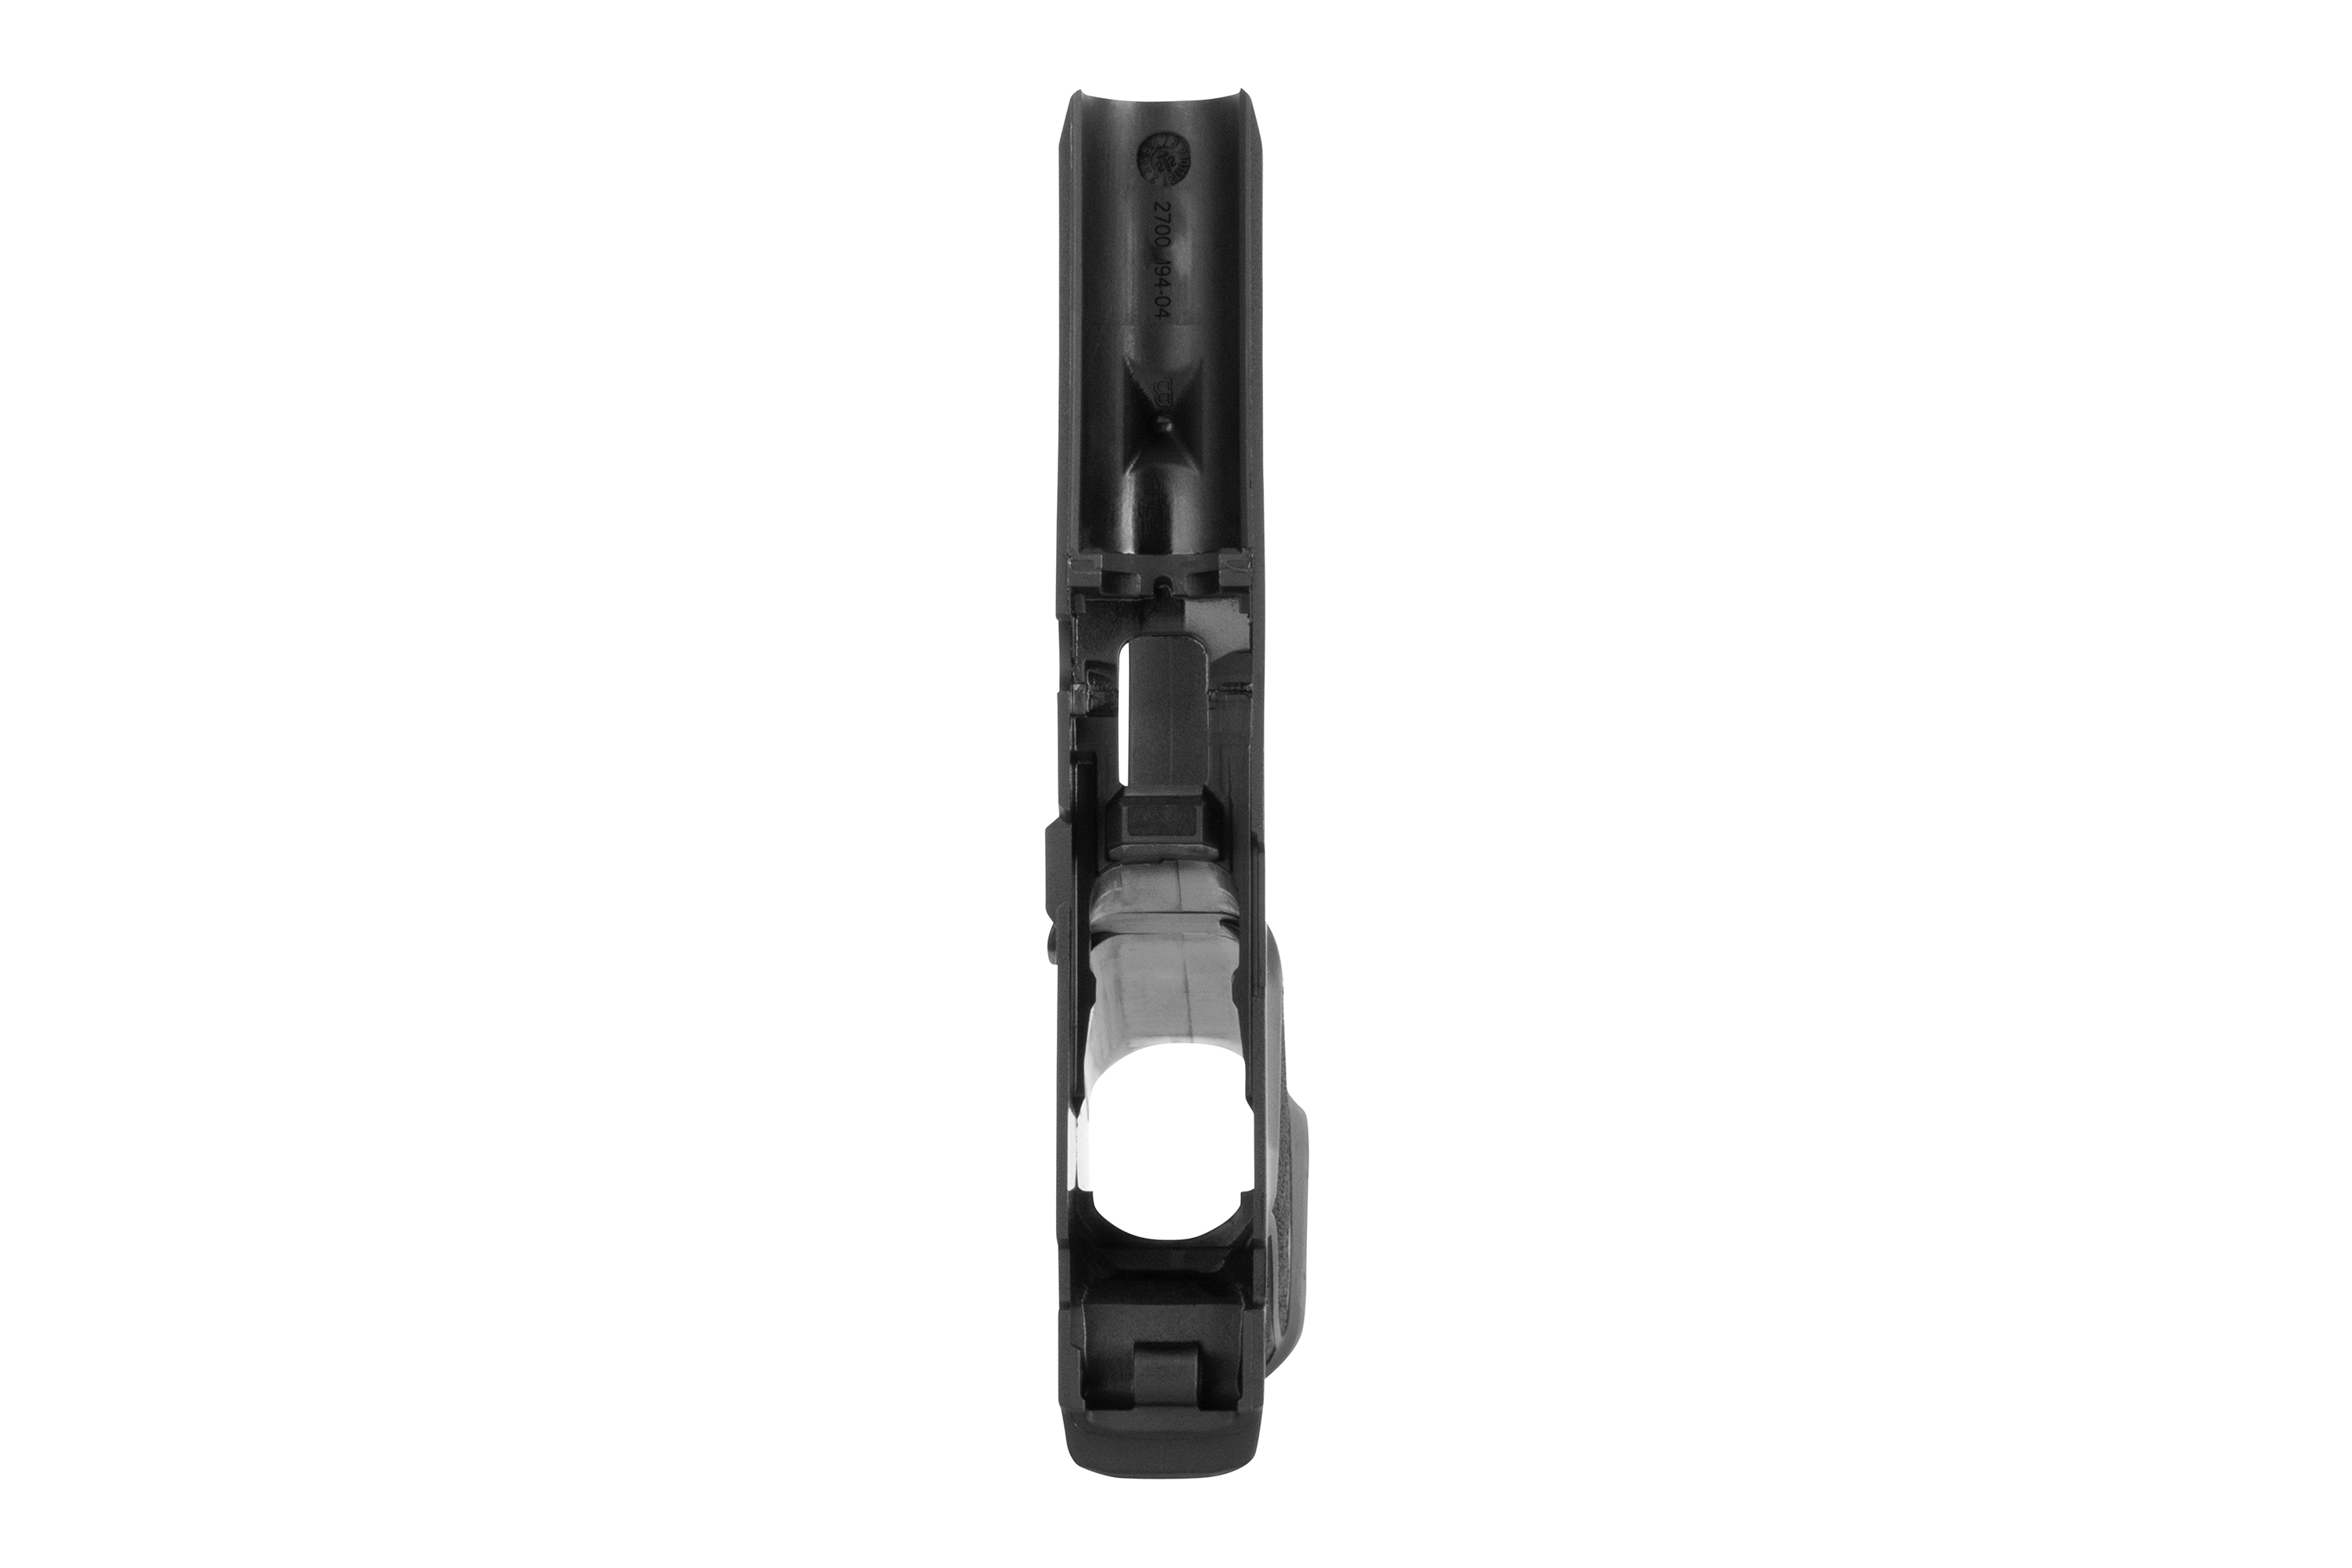 Sig Sauer Griffmodul P365 MS schwarz 9mm Luger